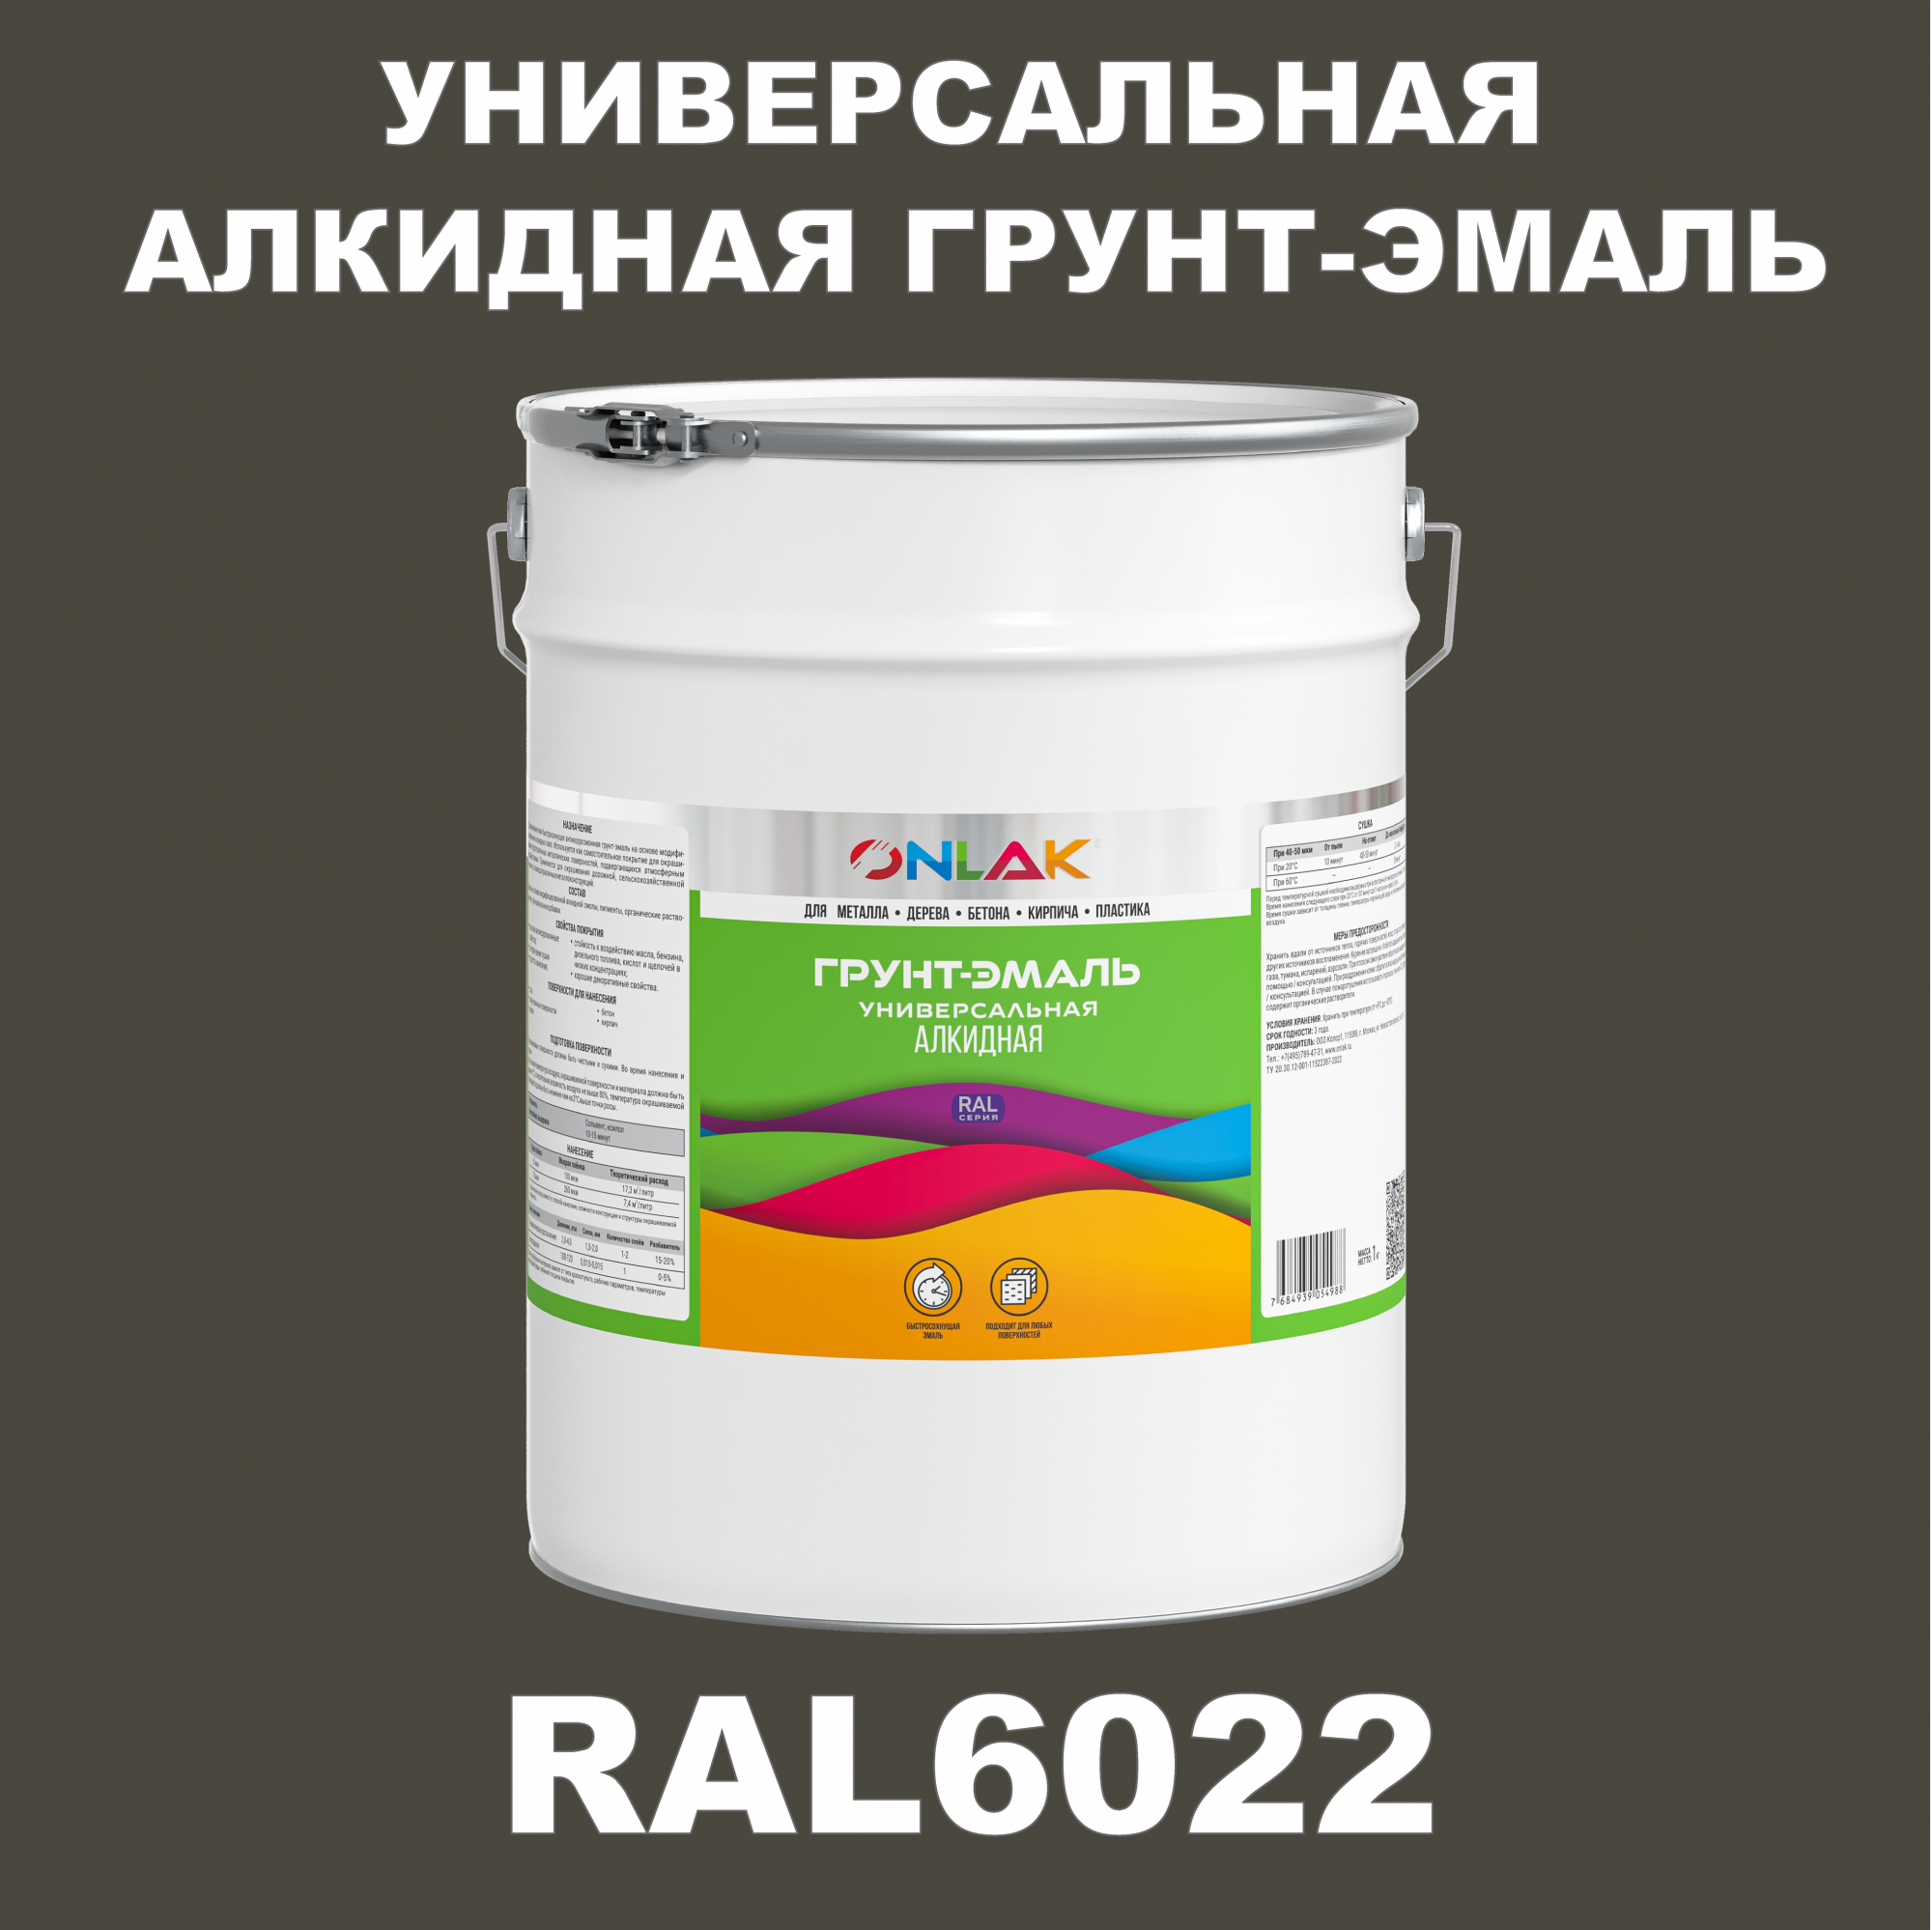 Грунт-эмаль ONLAK 1К RAL6022 антикоррозионная алкидная по металлу по ржавчине 20 кг грунт эмаль neomid по ржавчине быстросохнущая алкидная серая 0 9 кг